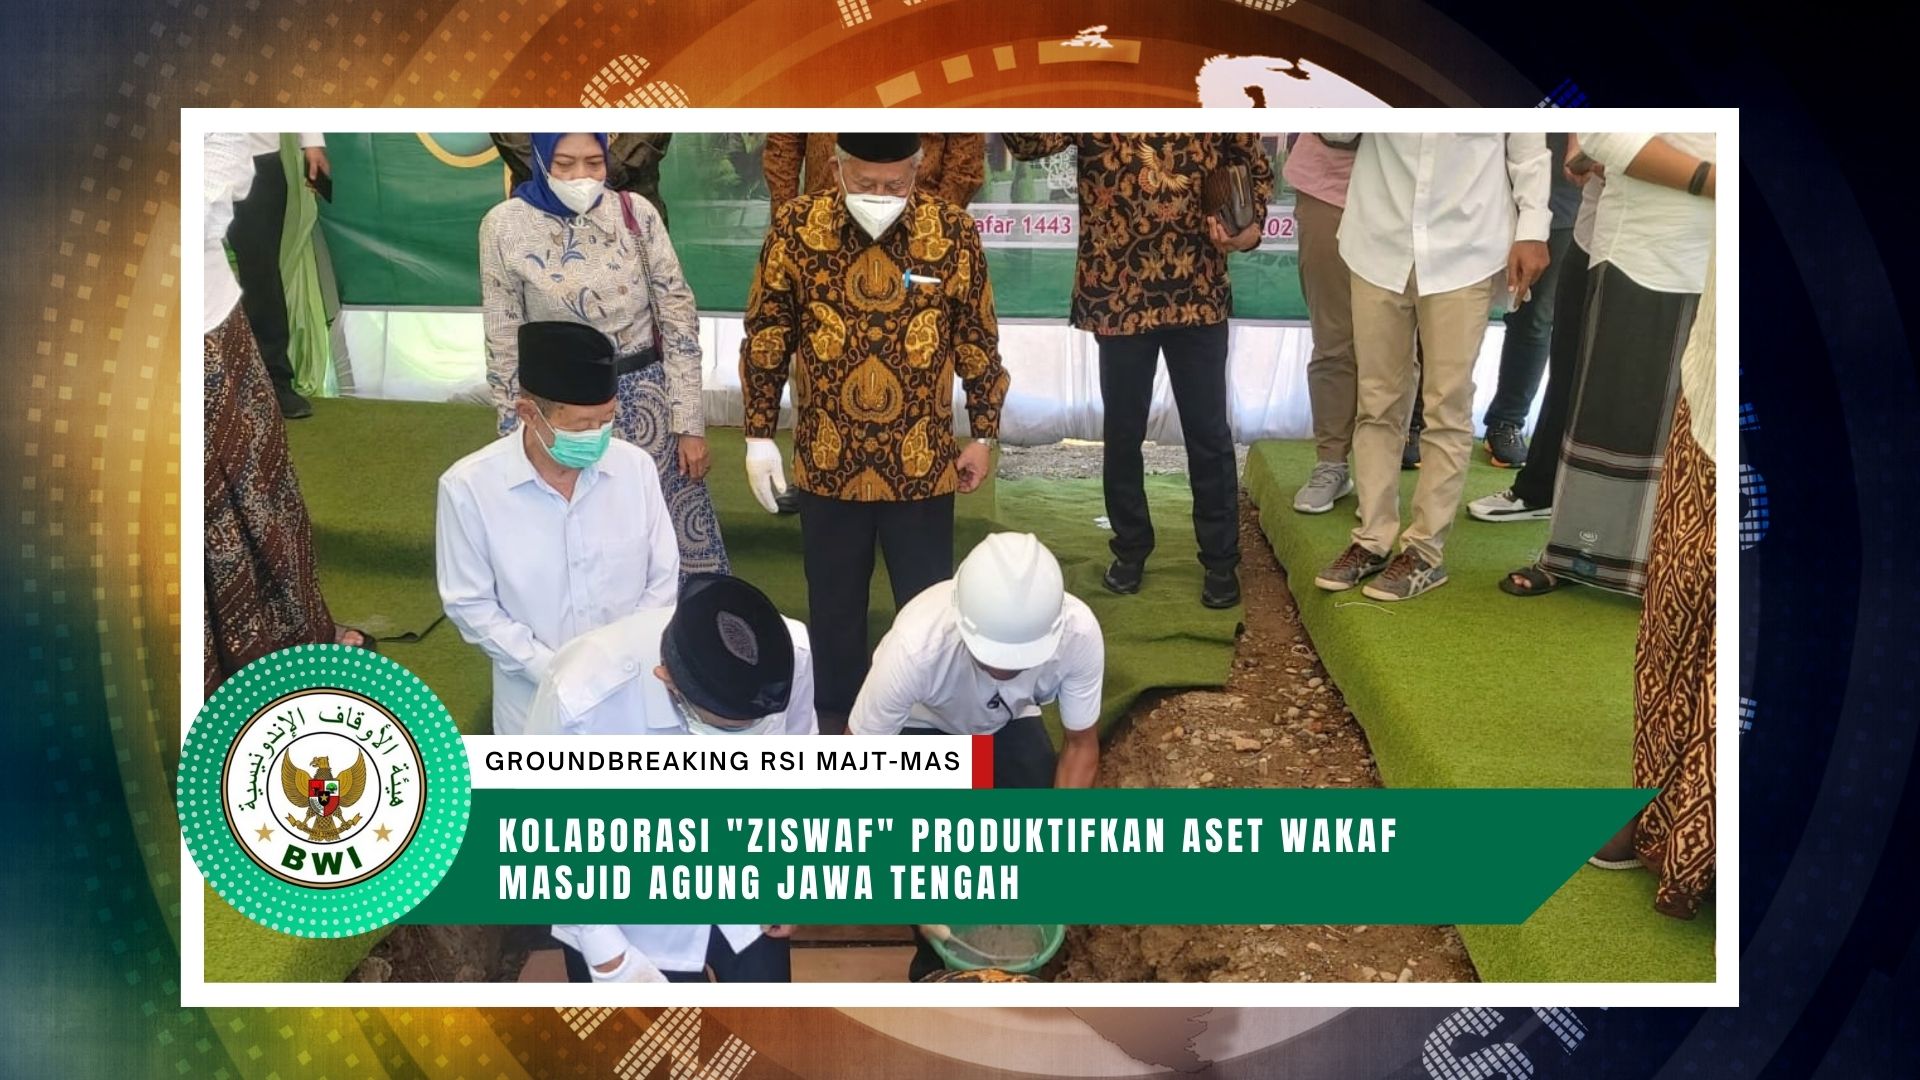 Kolaborasi “Ziswaf” Produktifkan Aset Wakaf Masjid Agung Jawa Tengah